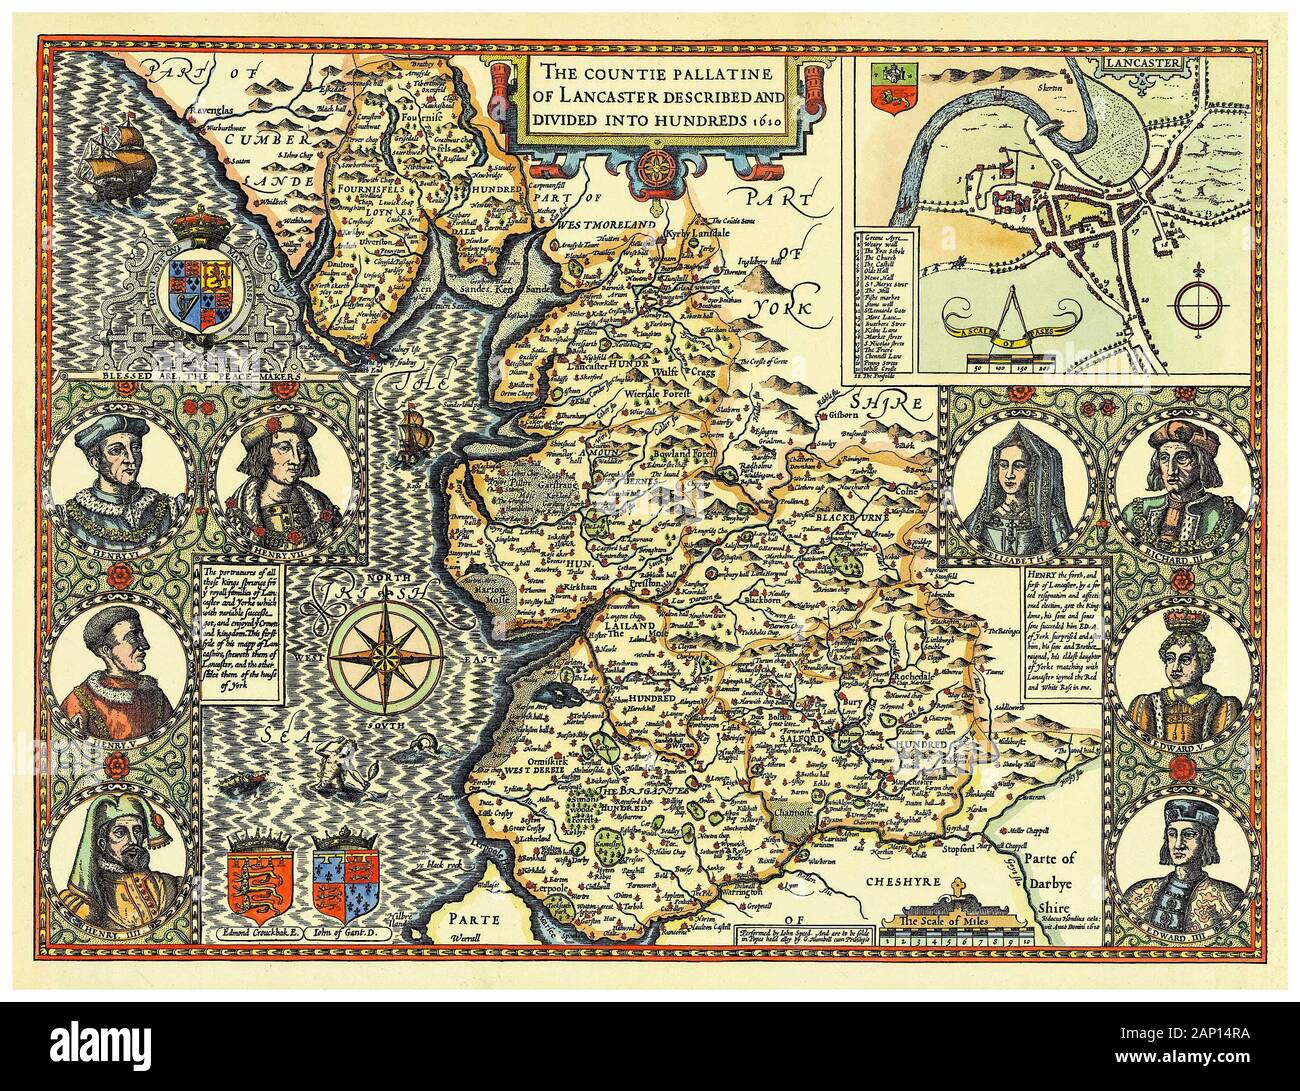 Alte Vintage Karte der Grafschaft Lancashire, England, Großbritannien, Anfang des 17. Jahrhunderts Illustration, 1610 Stockfoto